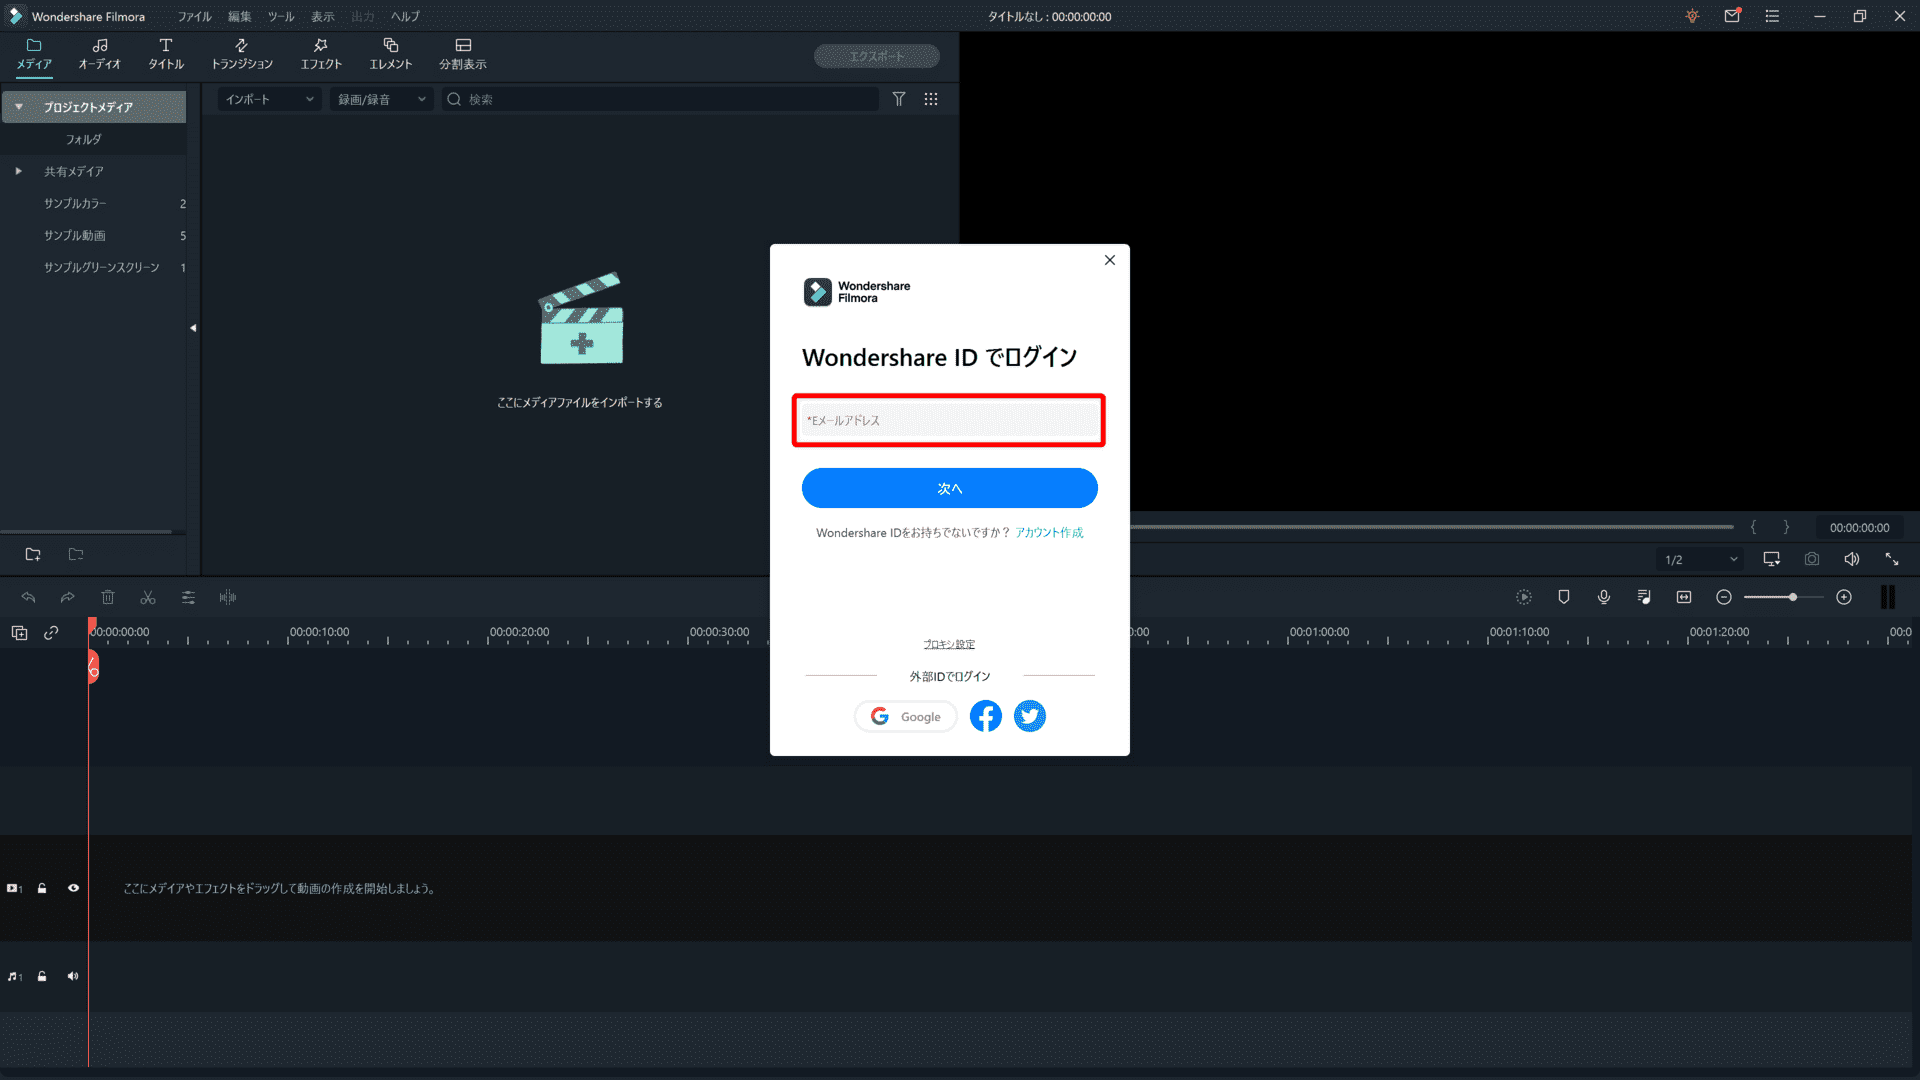 Filmora Xとは？｜動画編集ソフトFilmora Xの概要や基本的な使い方について解説｜基本的な使い方について：ログインするためのポップアップが表示されたら、Wondershare ID（Eメールアドレス）を入力して「次へ」をクリックします。